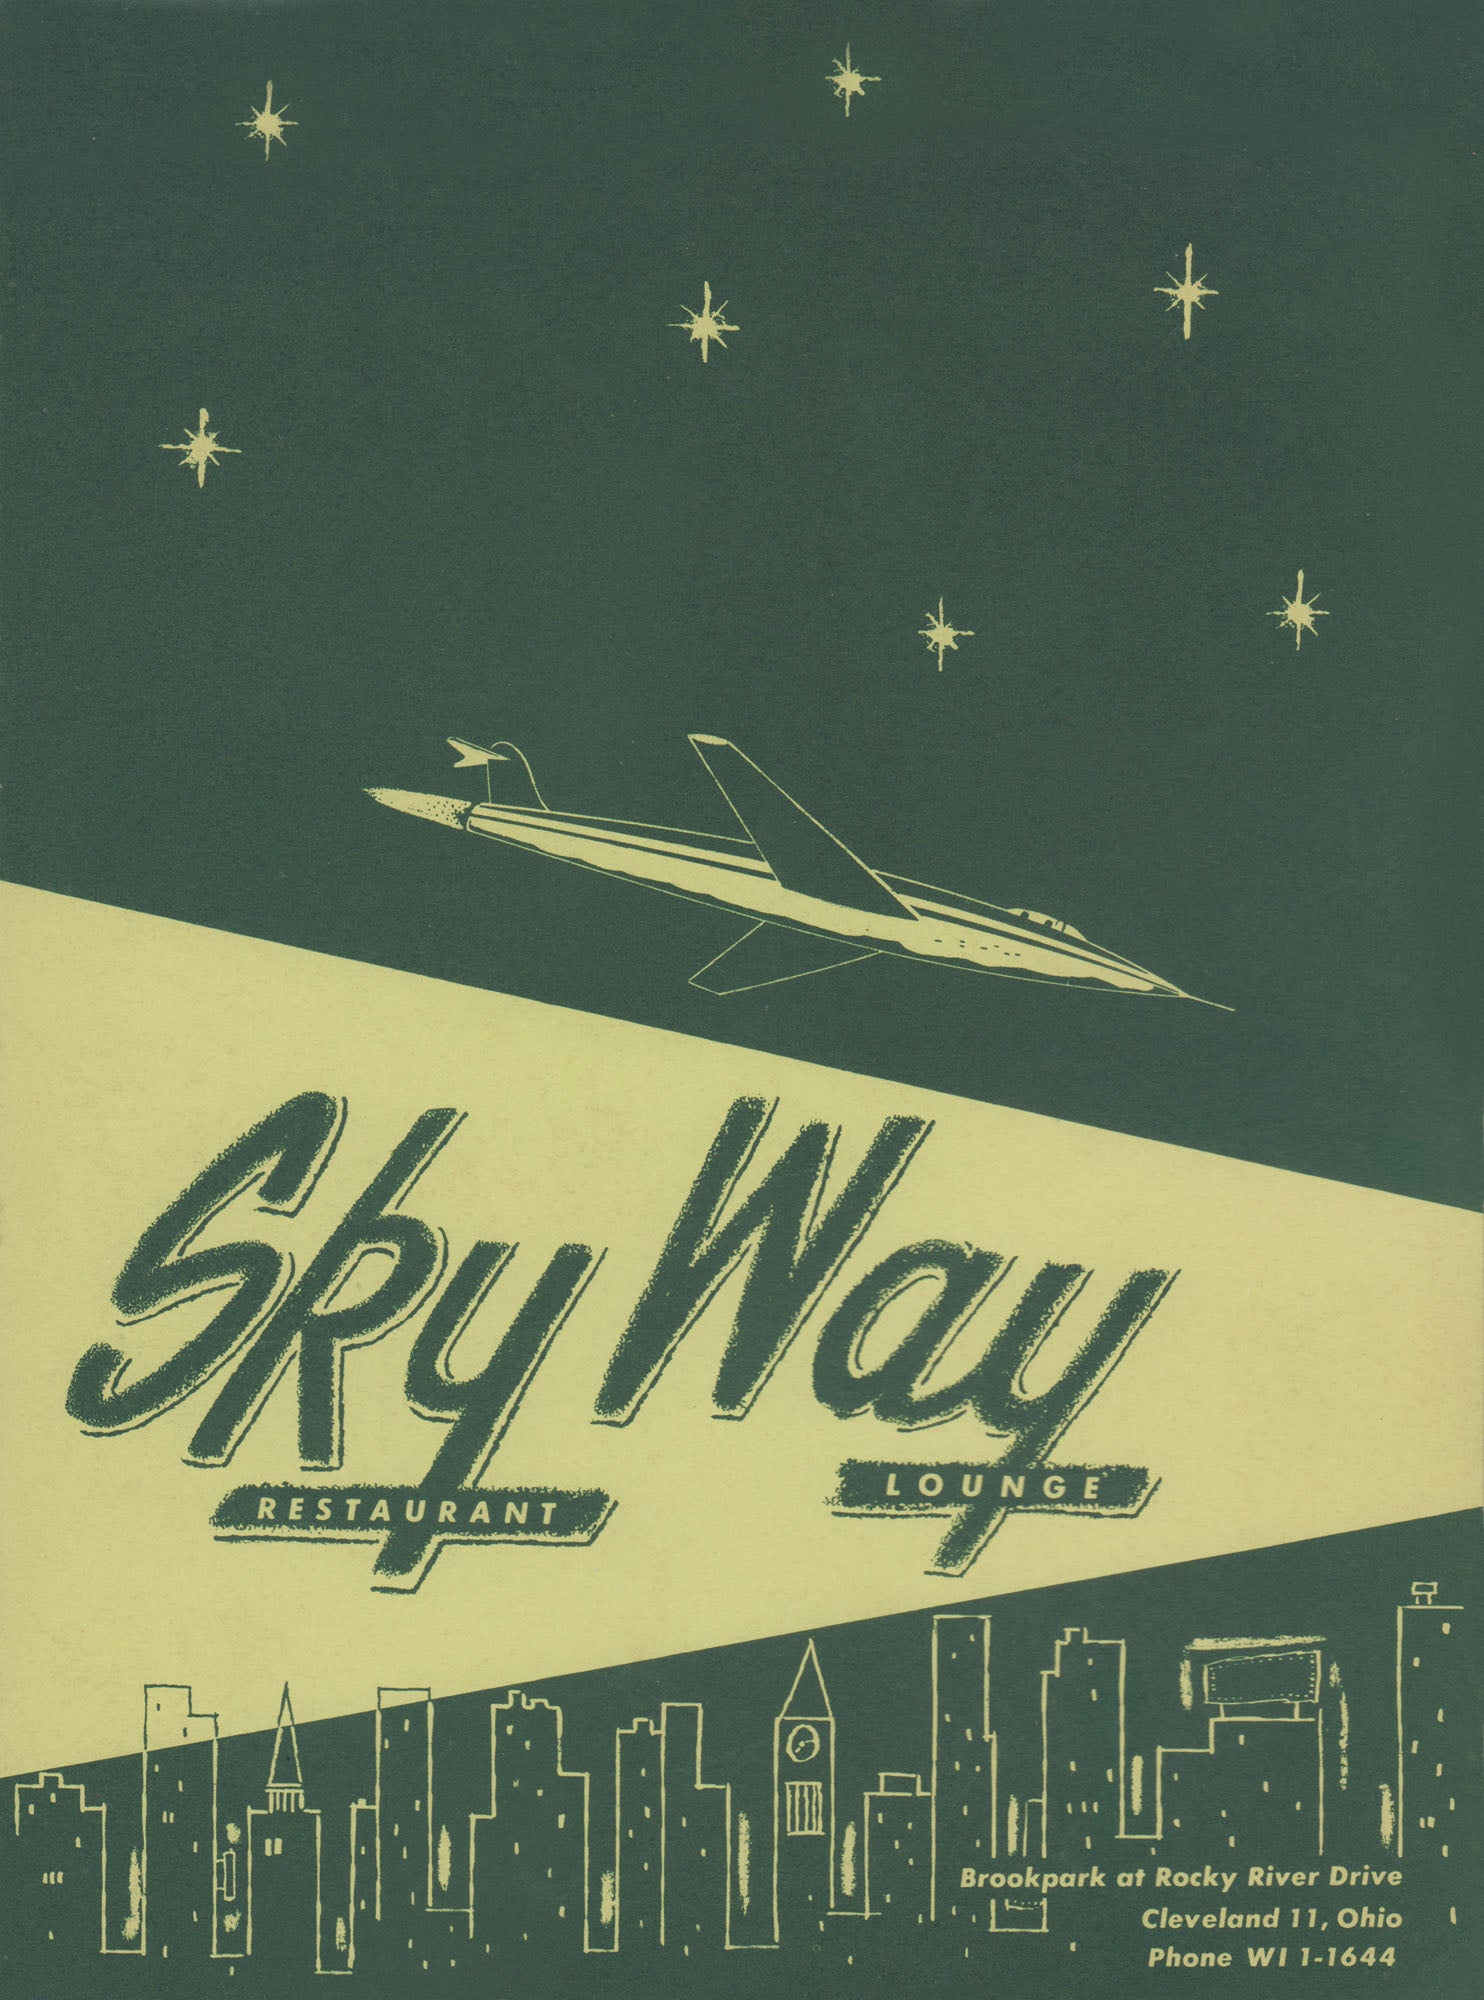 Skyway Restaurant & Lounge, Cleveland 1960s menu art